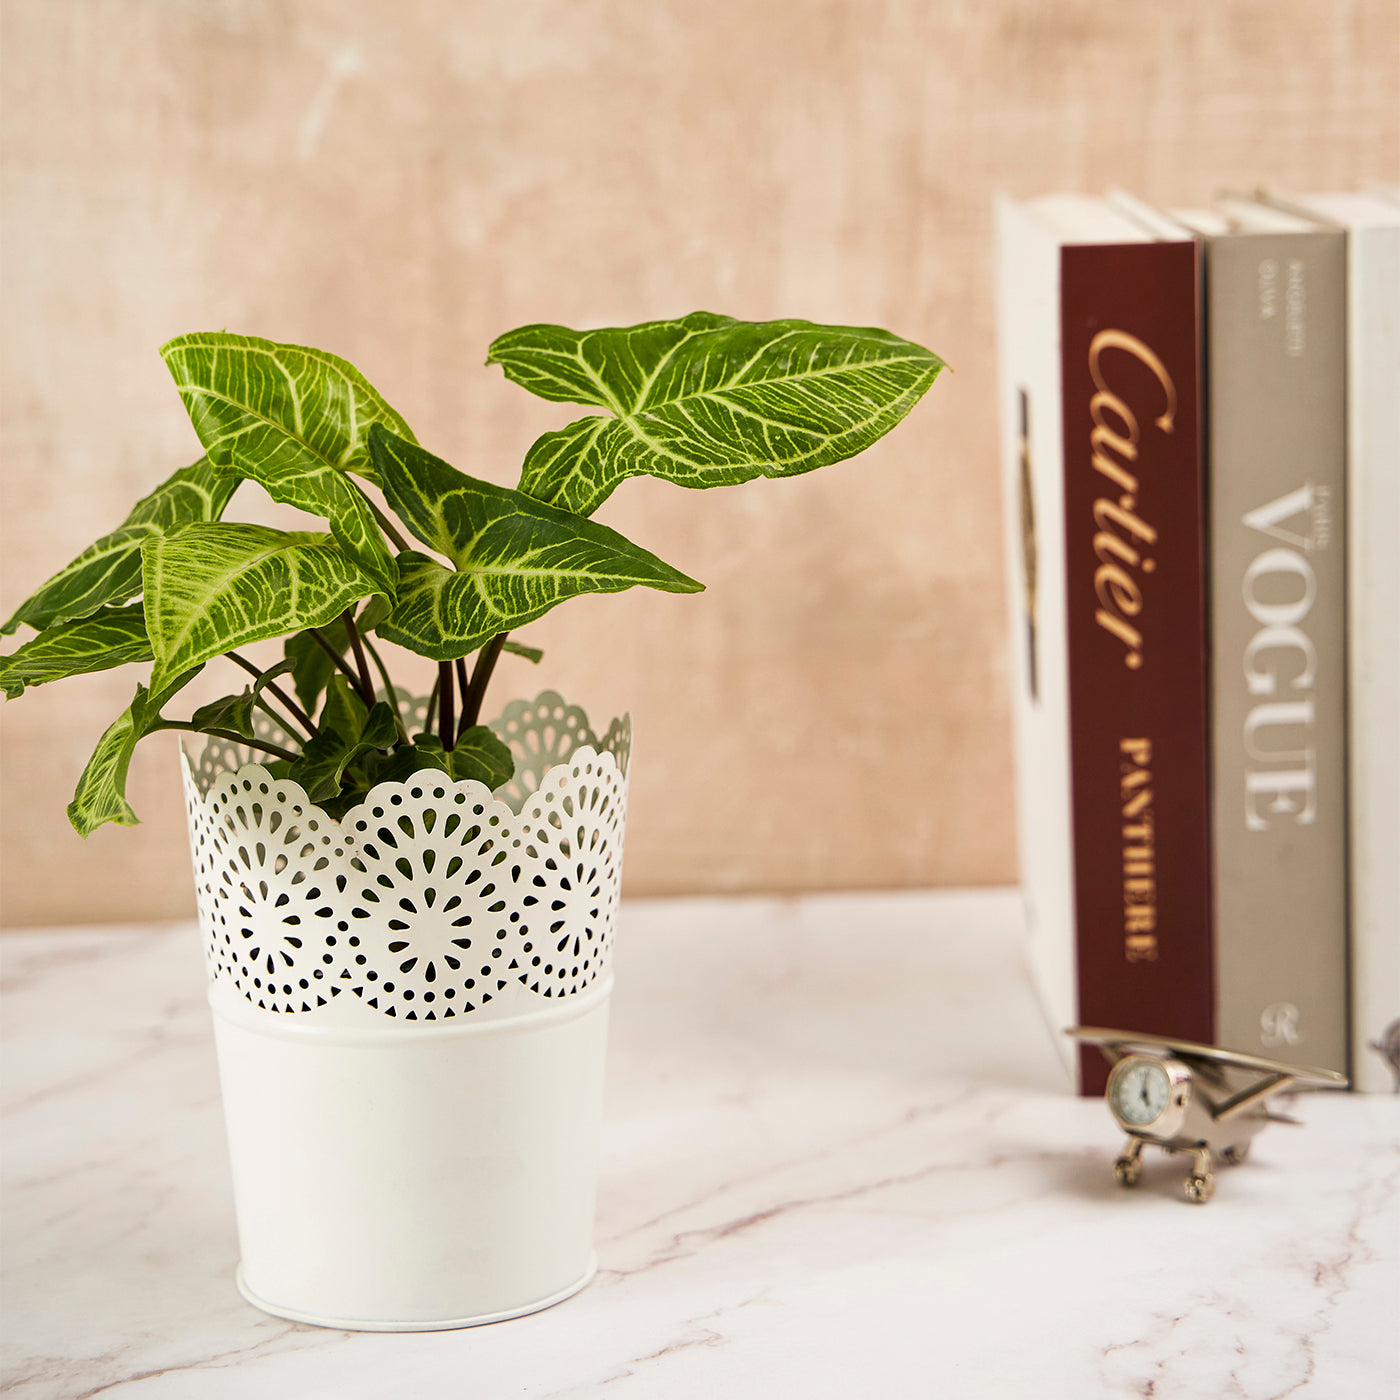 Metal Planter Flower Pot For Home Garden Office Desktop- White